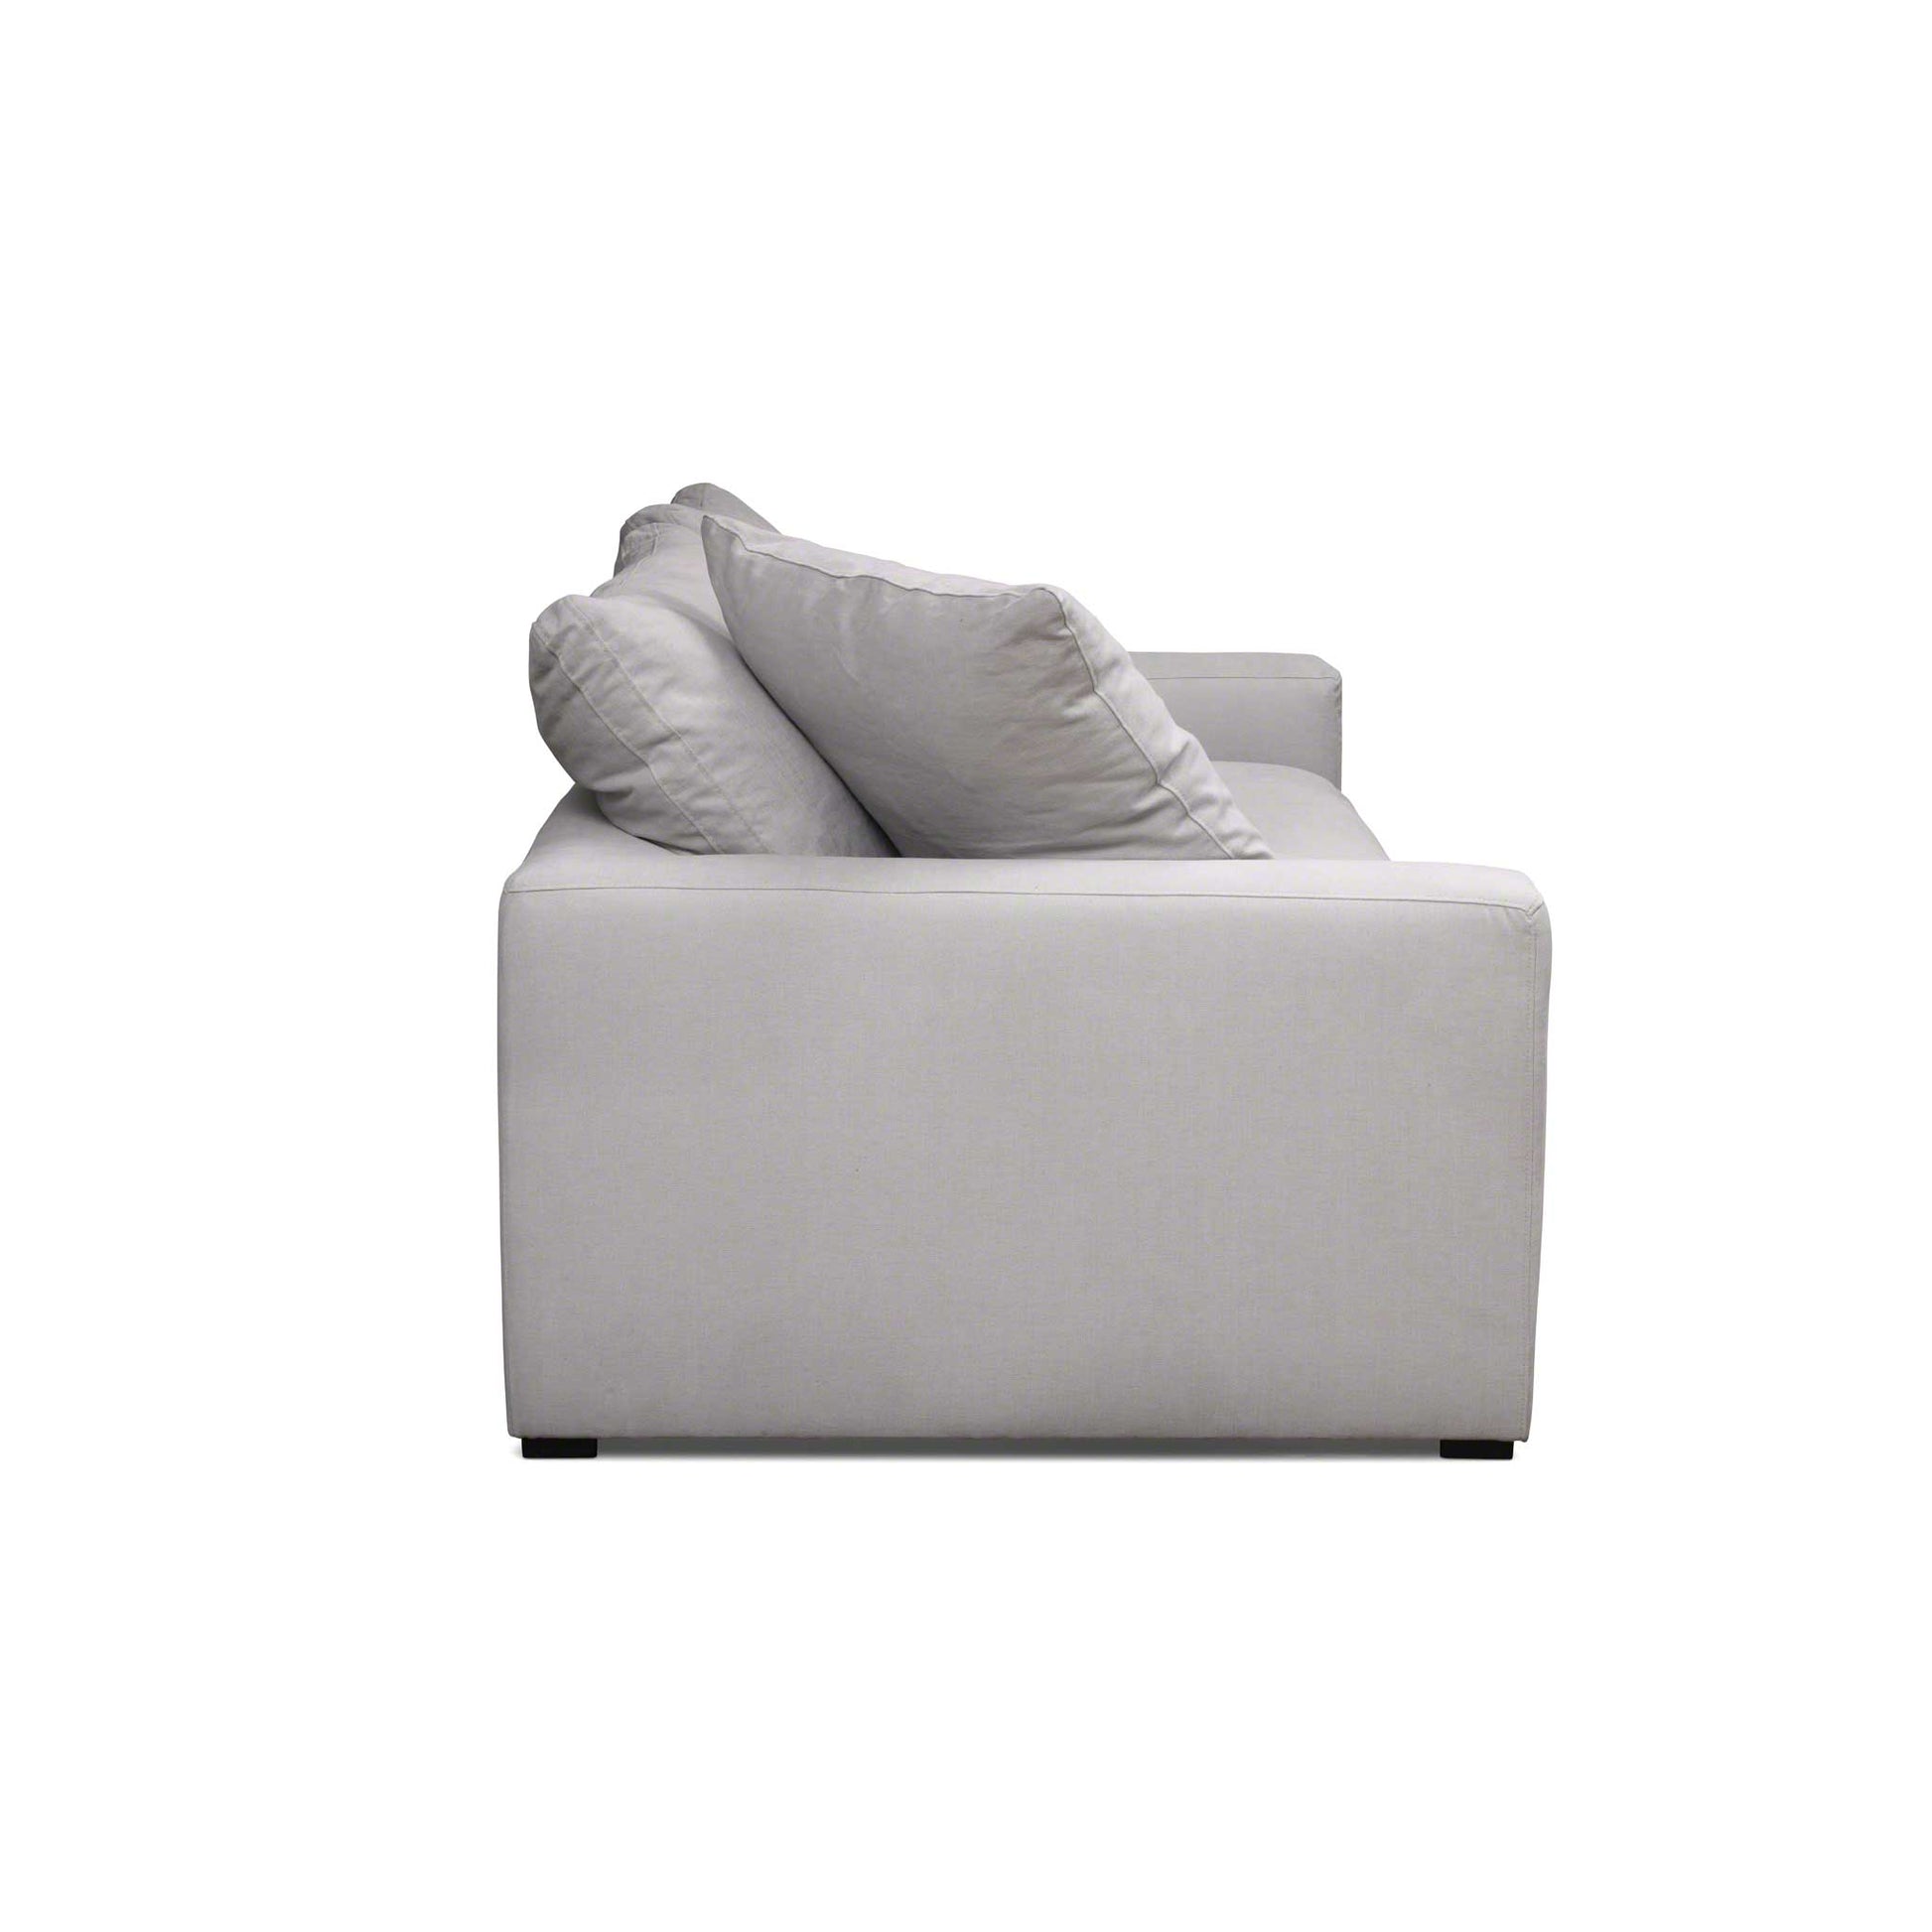 Pösig, snygg och jätteskön 4-sits soffa med avtagbara sitt- och ryggplymåer.